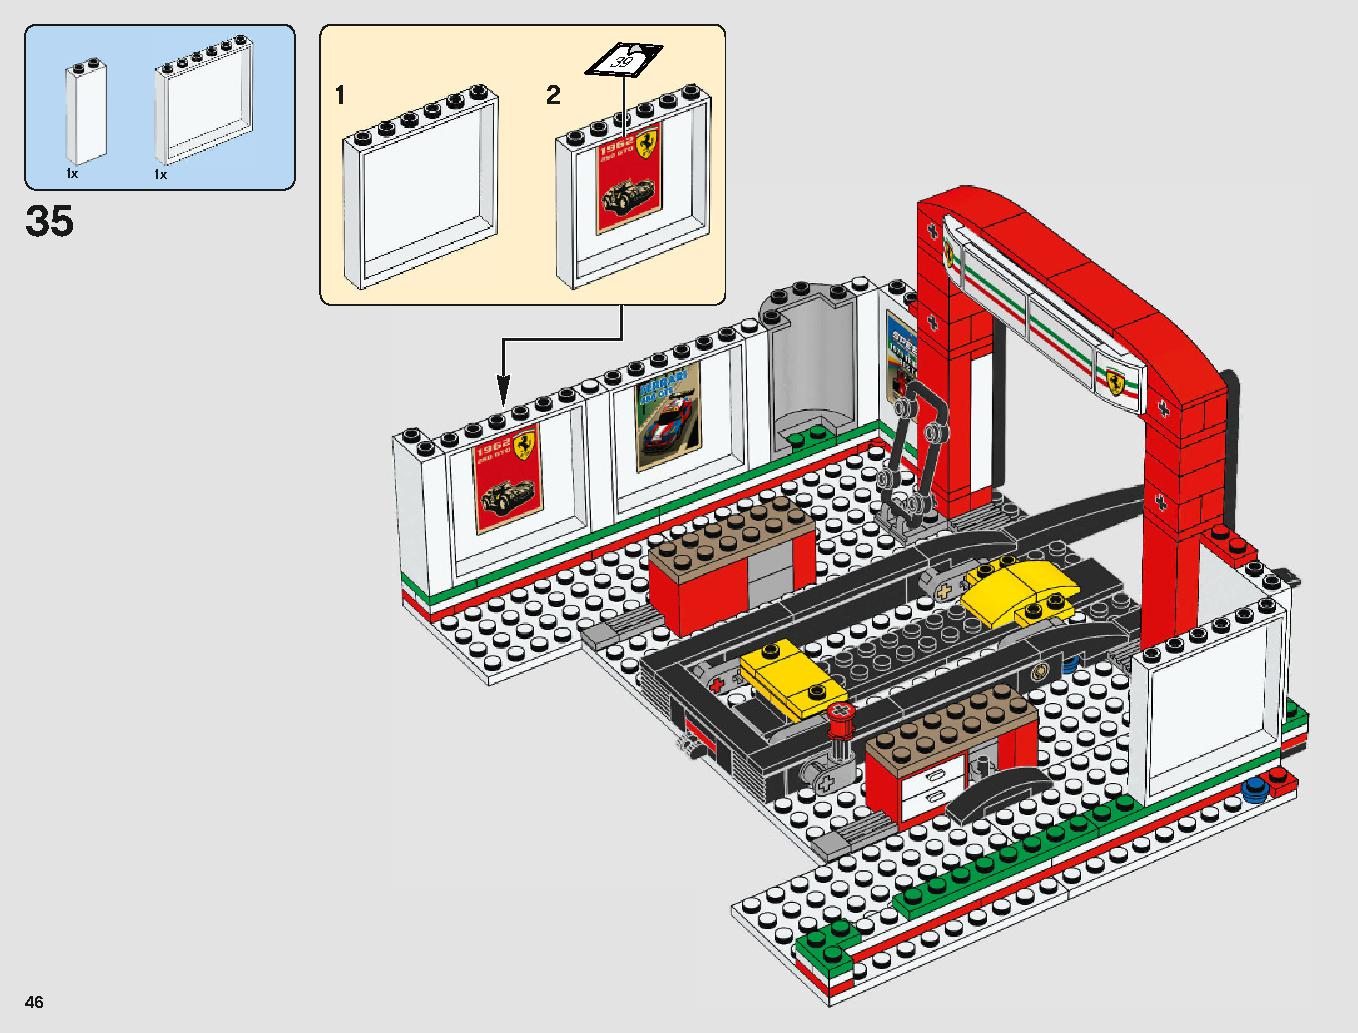 フェラーリ・アルティメット・ガレージ 75889 レゴの商品情報 レゴの説明書・組立方法 46 page